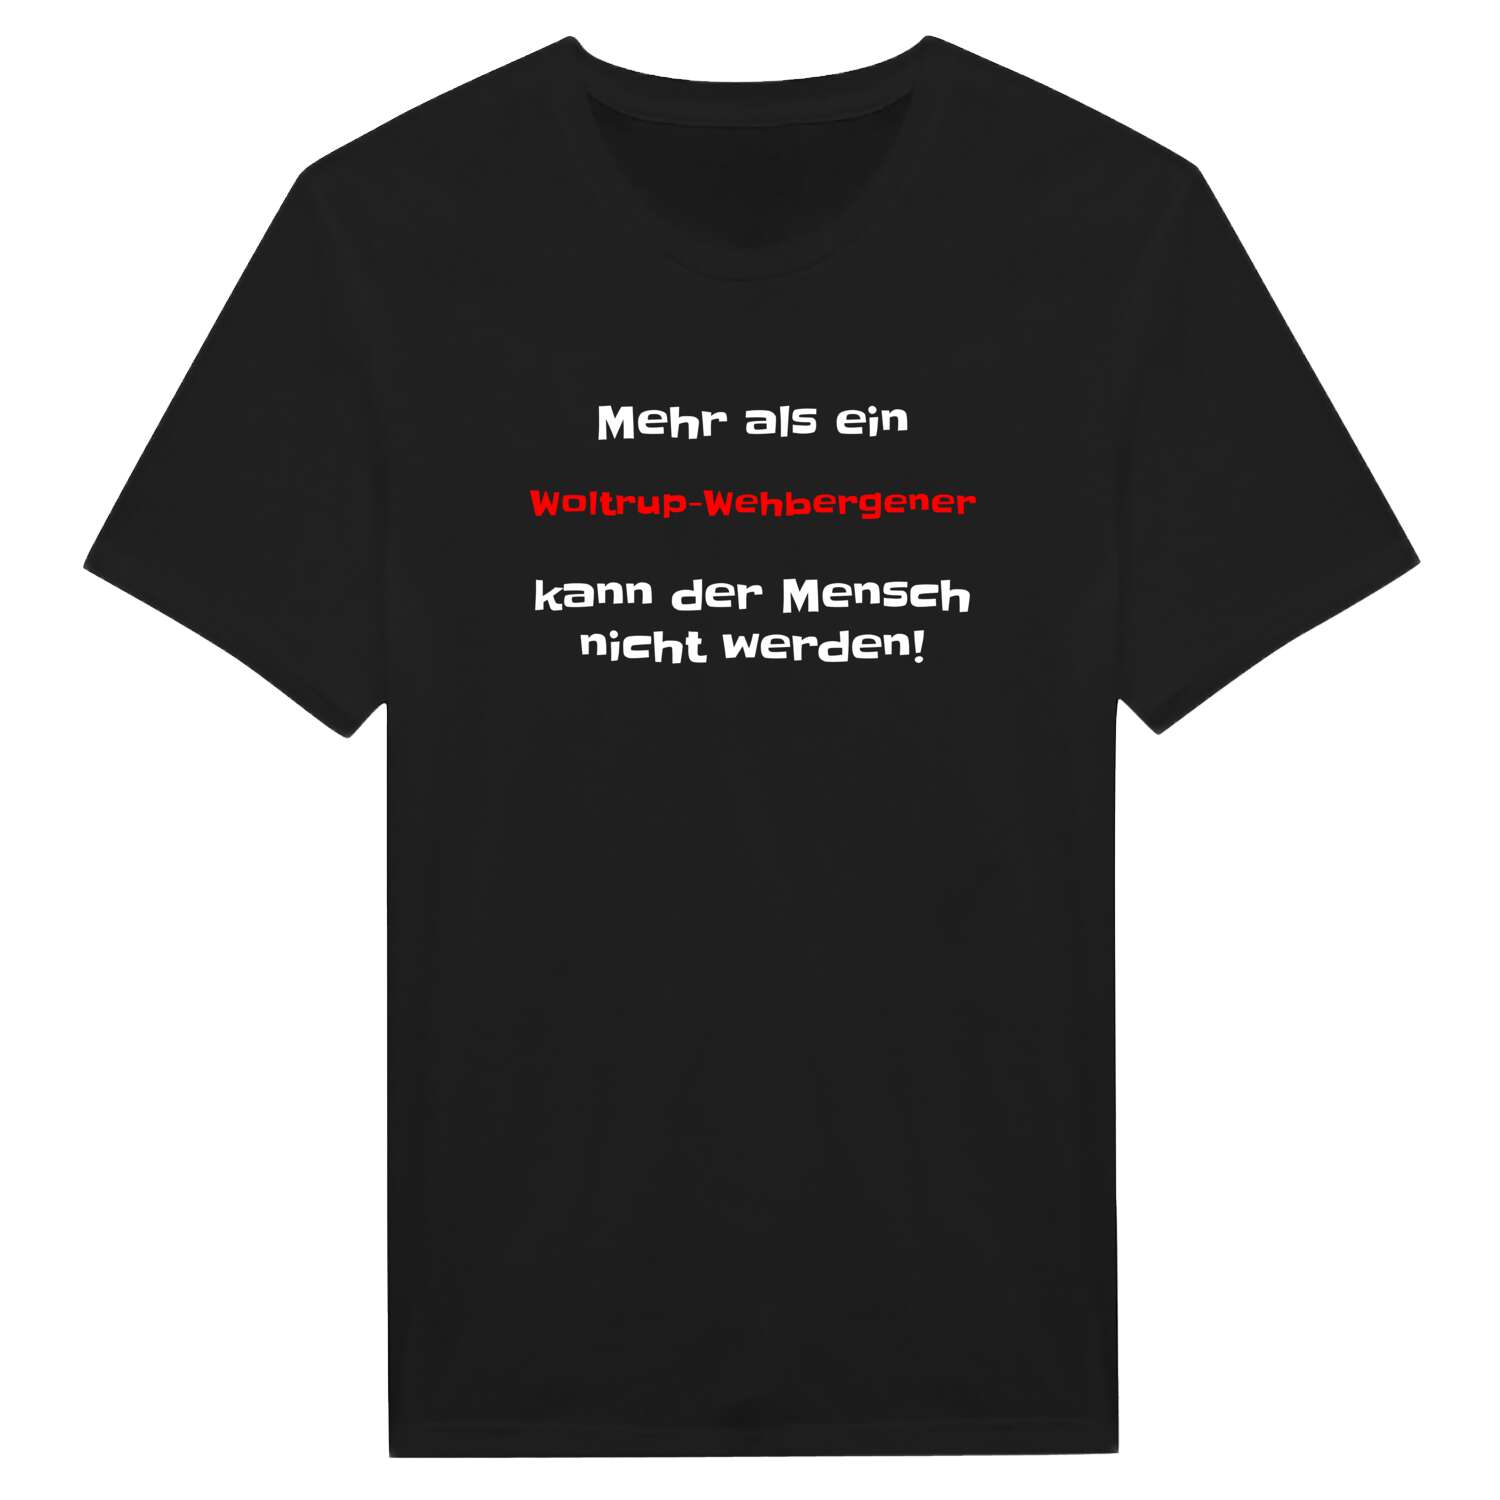 Woltrup-Wehbergen T-Shirt »Mehr als ein«